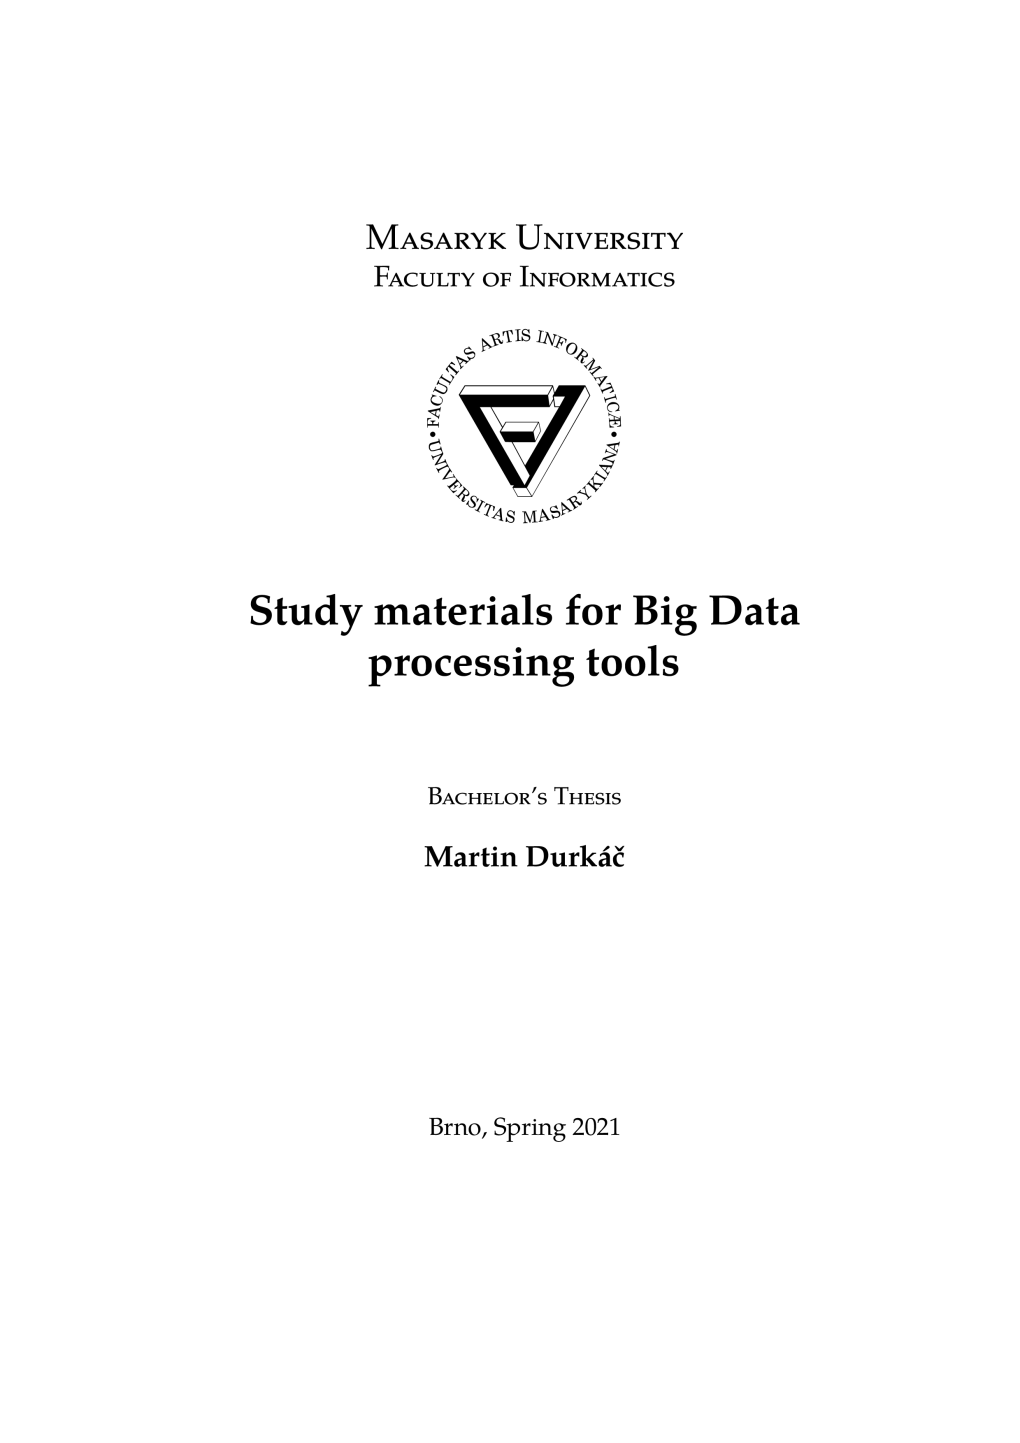 Study Materials for Big Data Processing Tools